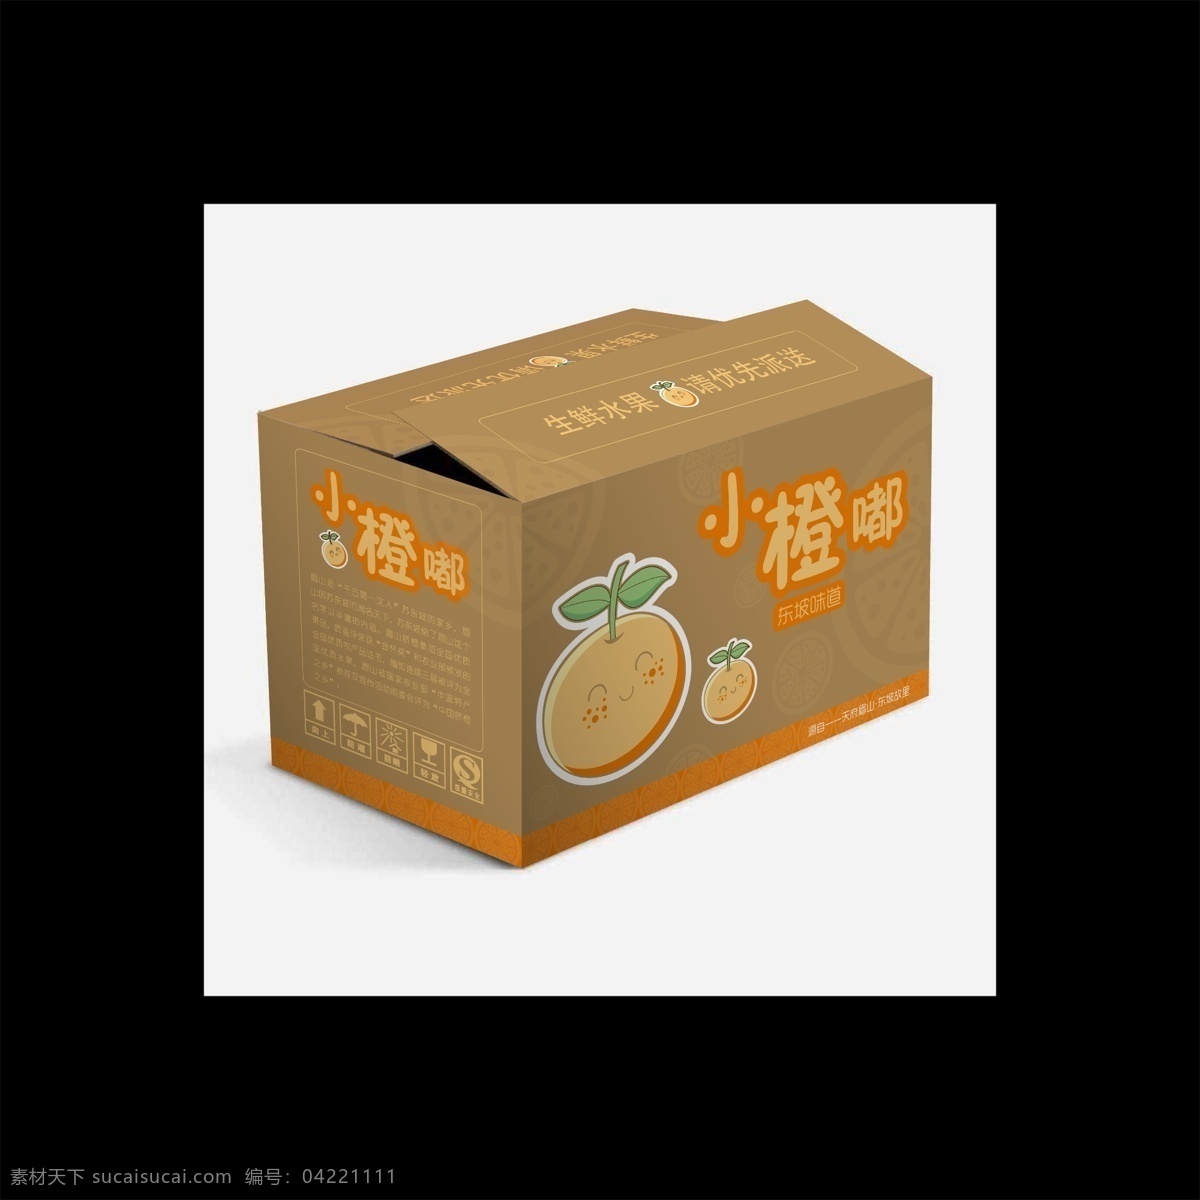 水果 包装箱 效果图 小橙嘟 艺术字 水果包装盒 纸箱ai 黄色箱子 包装设计